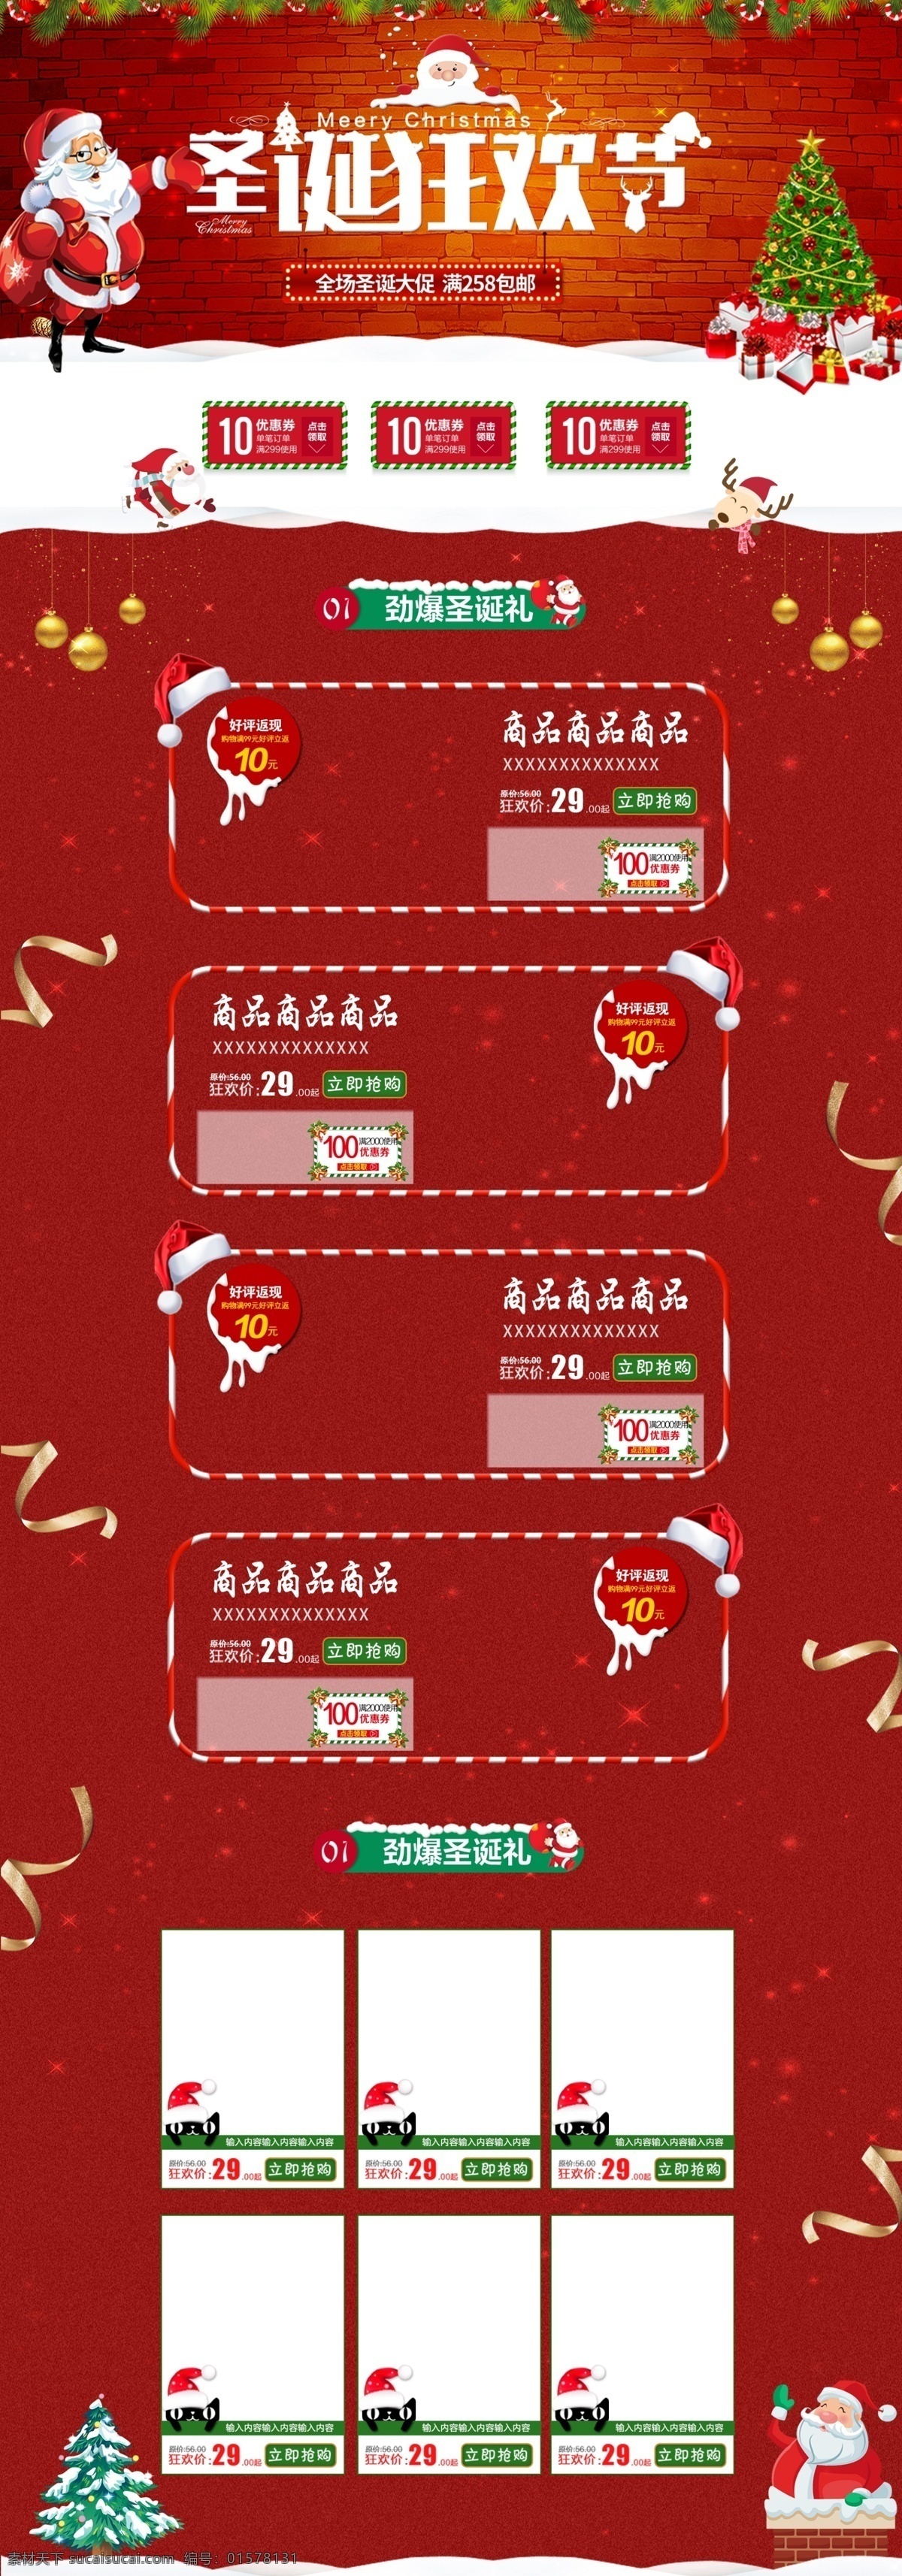 红色 简约 喜庆 圣诞 狂欢节 化妆品 电商 首页 模板 背景 大图 psd分层 节日 圣诞节 圣诞树 圣诞老人 优惠劵 礼物